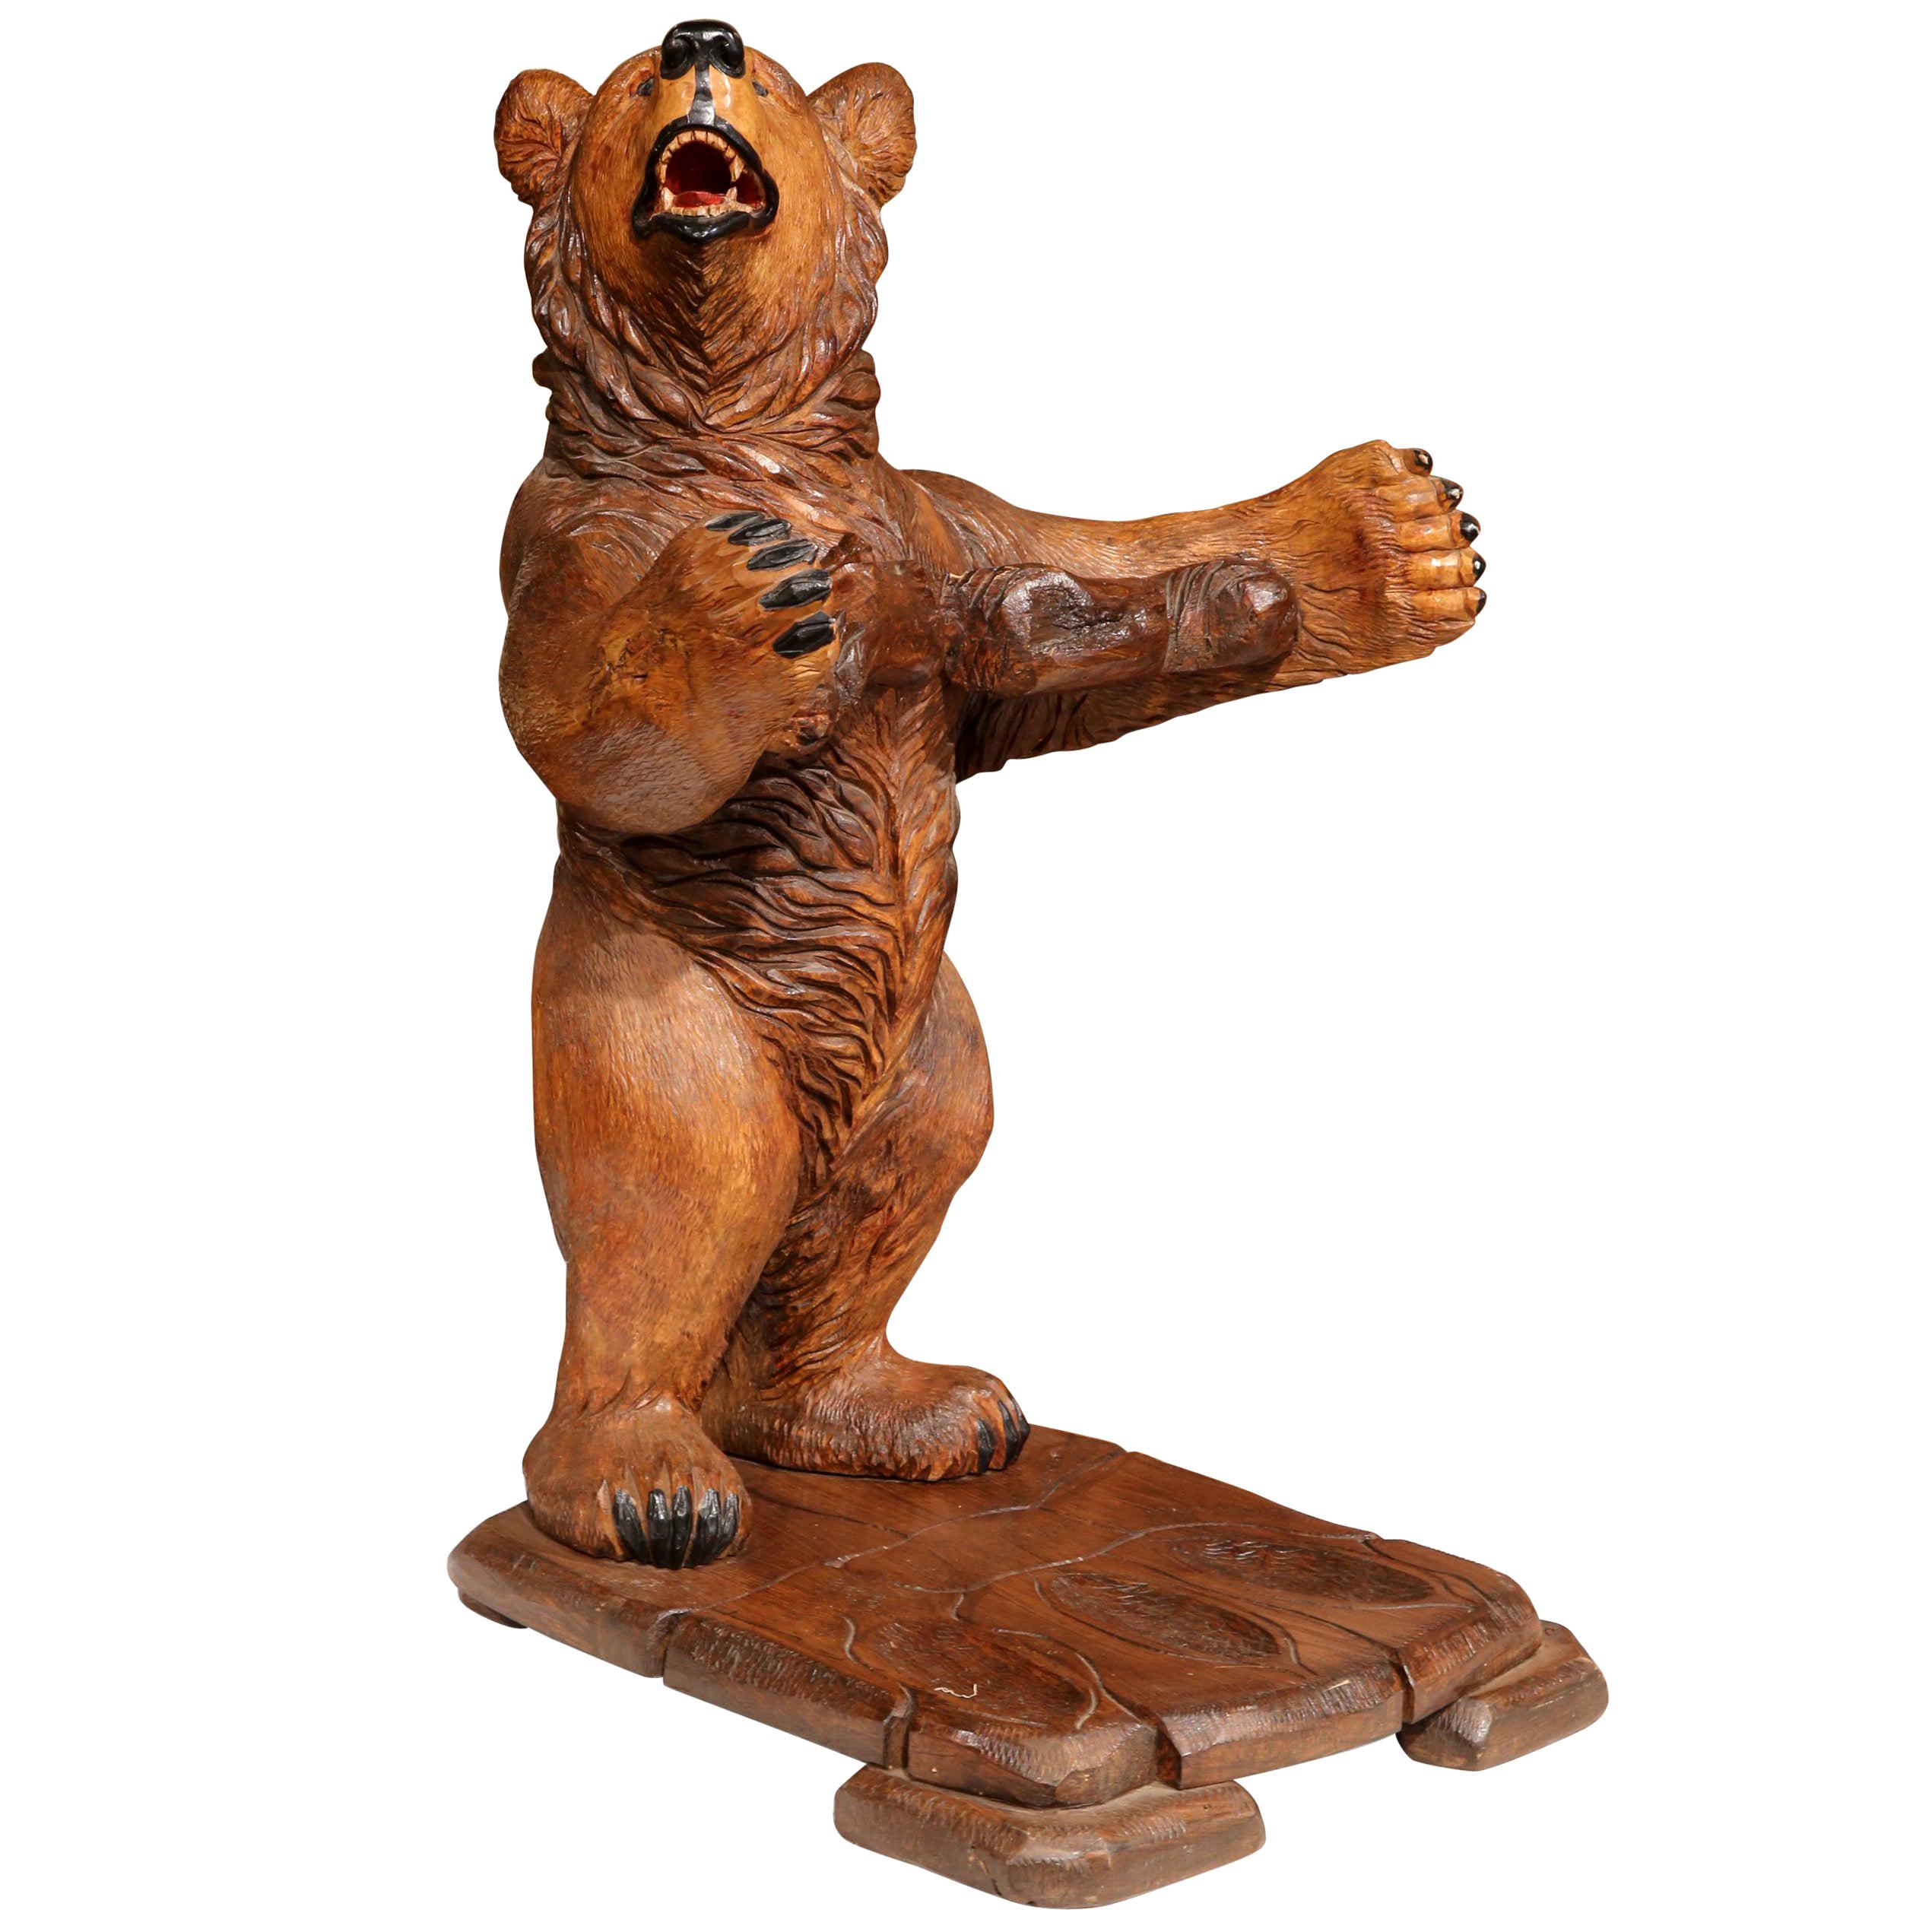 Dieser interessante antike Waffenständer wurde um 1920 in Frankreich geschnitzt. Die Eichenskulptur zeigt einen jungen Bären, der mit offenen Armen aufsteht. Die hölzerne Tierfigur hat ein ausdrucksstarkes Gesicht und eine detaillierte Textur am